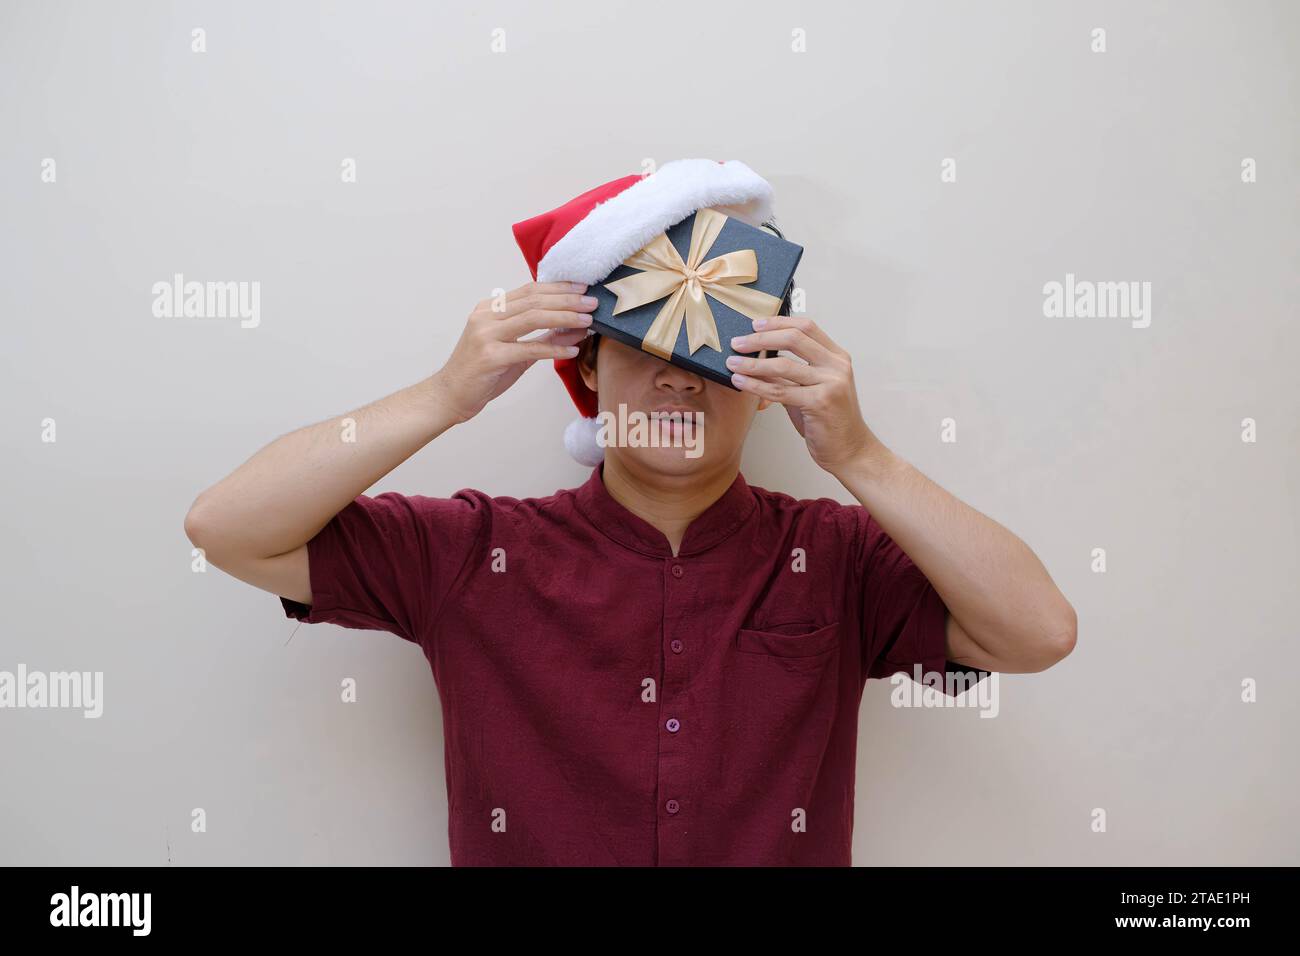 Ein junger asiatischer Mann hält eine Geschenkbox und einen Weihnachtsmann-Hut in der Hand, die sein Gesicht zur Hälfte bedeckten. Isolierter beigefarbener Hintergrund. Konzeptionelles Weihnachtsfoto. Stockfoto